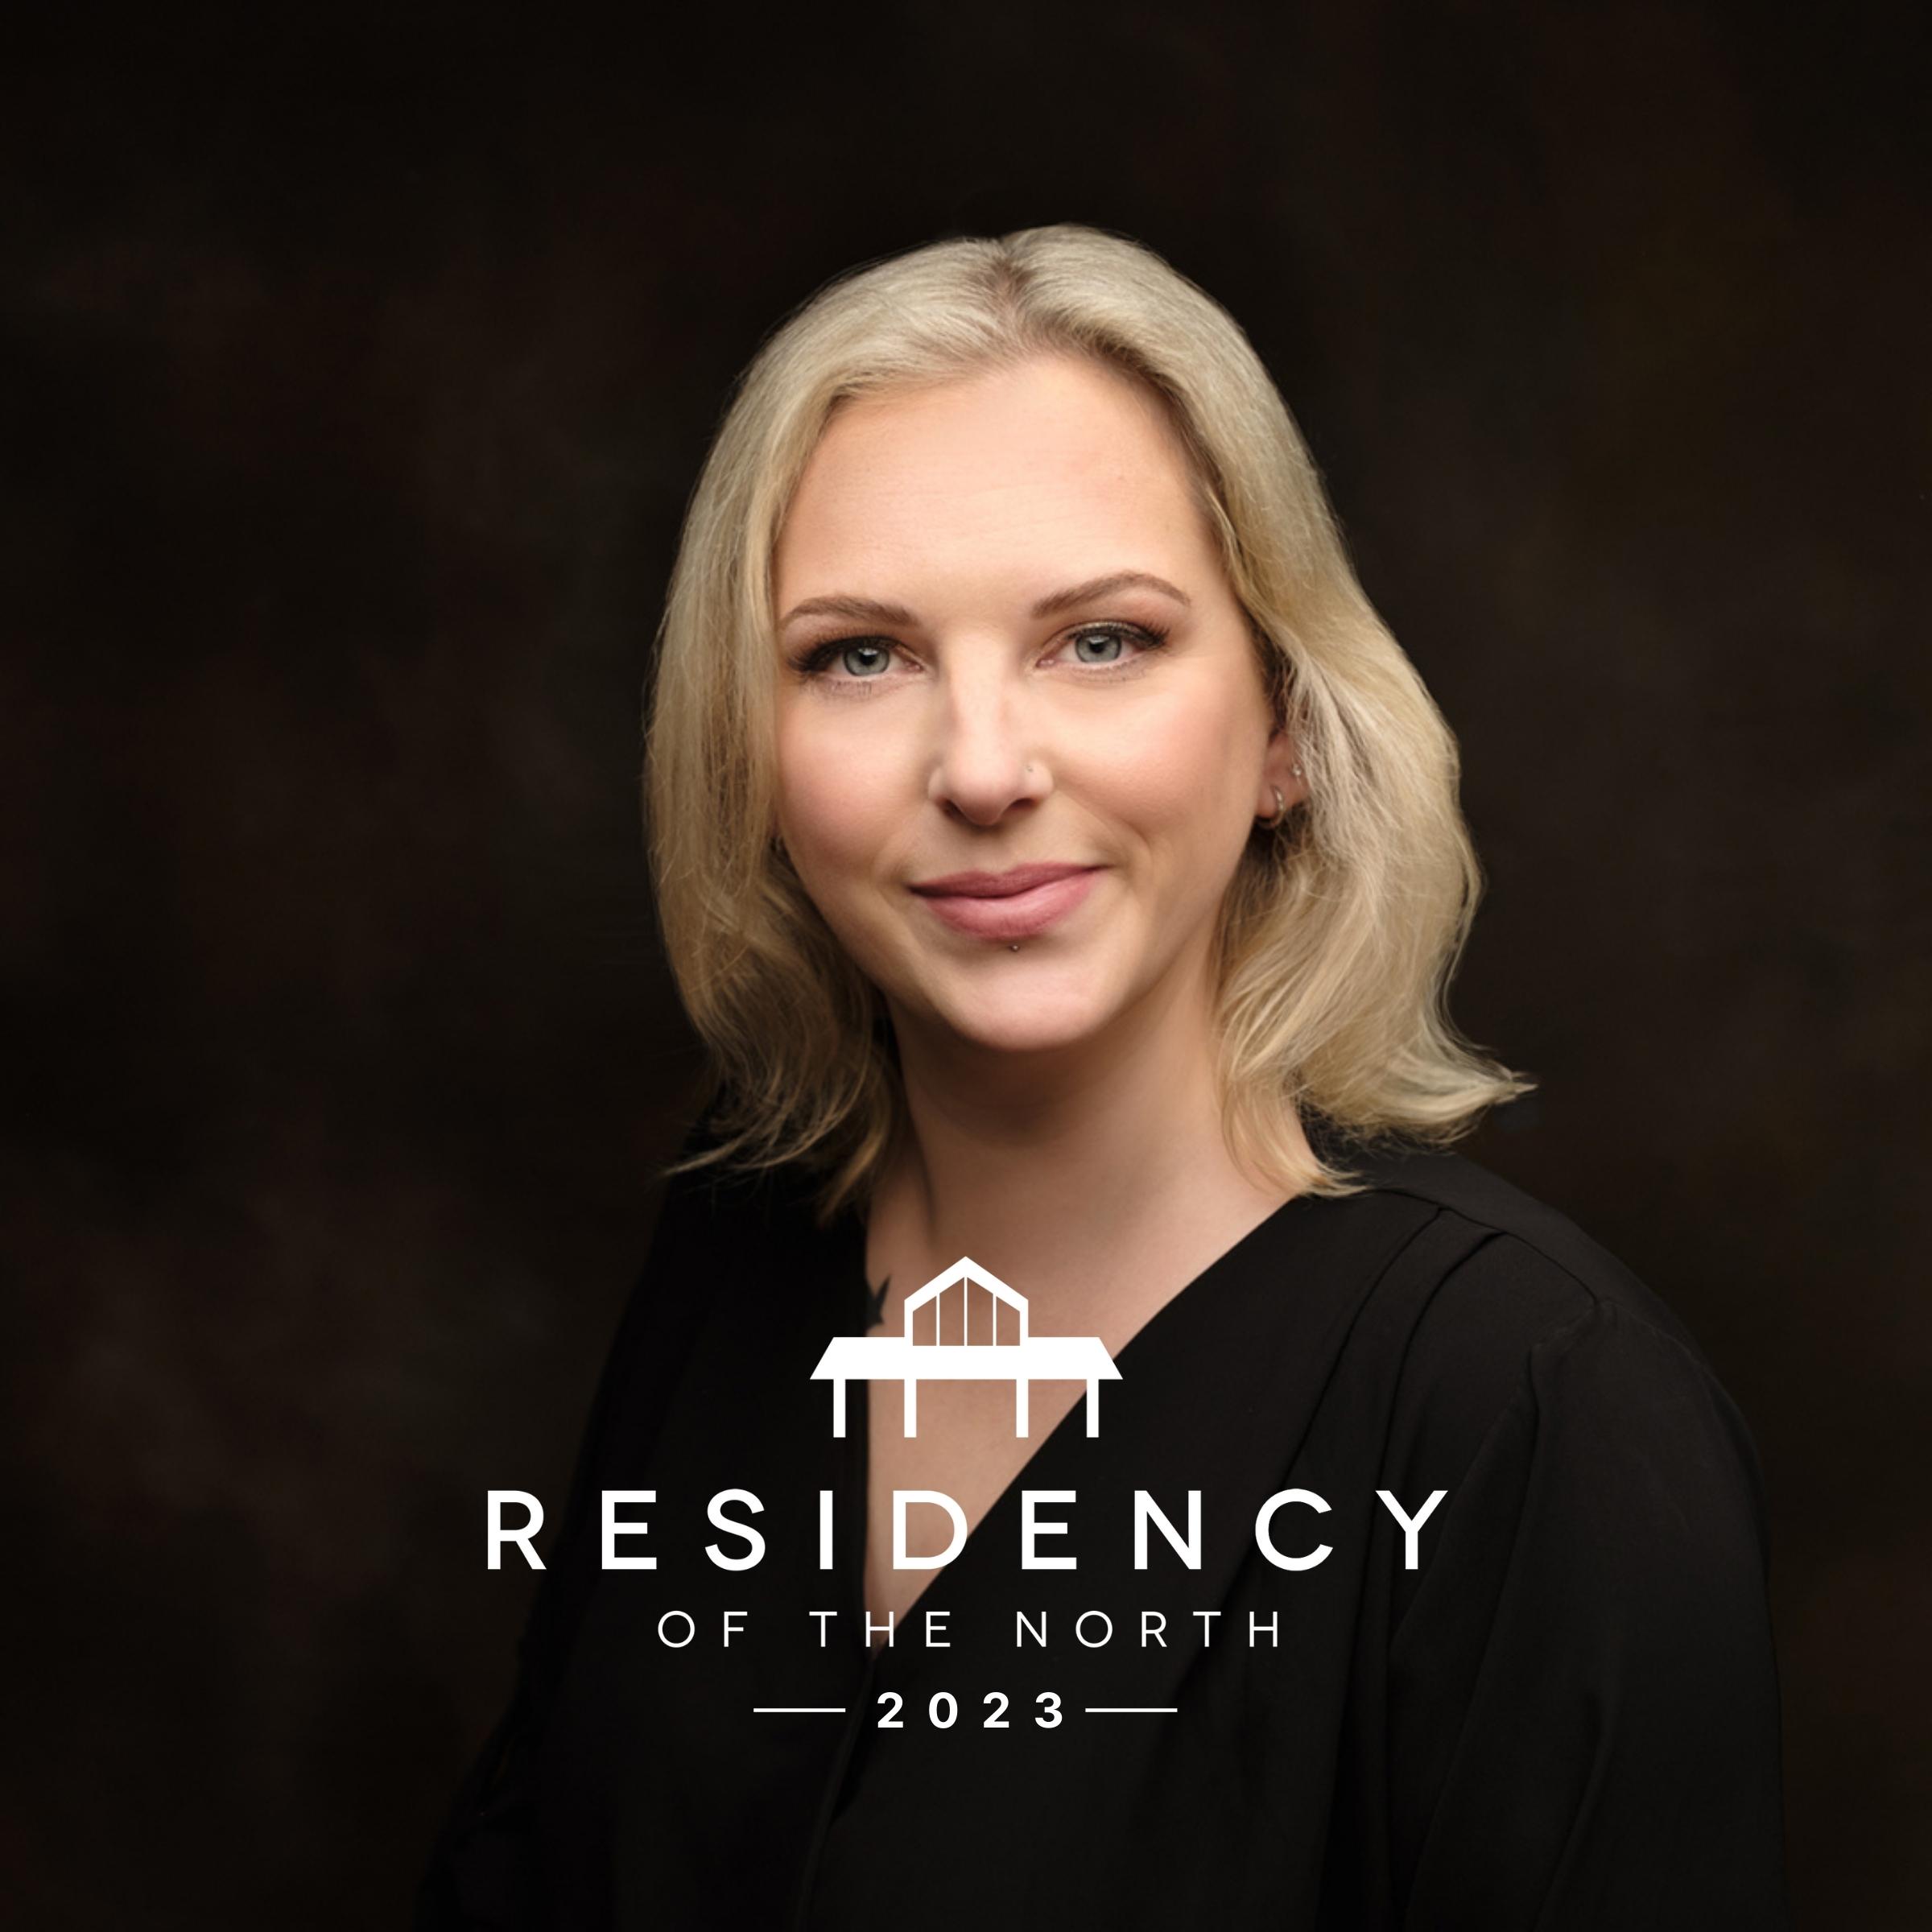 Residency Speaker - Ellie Cassidy